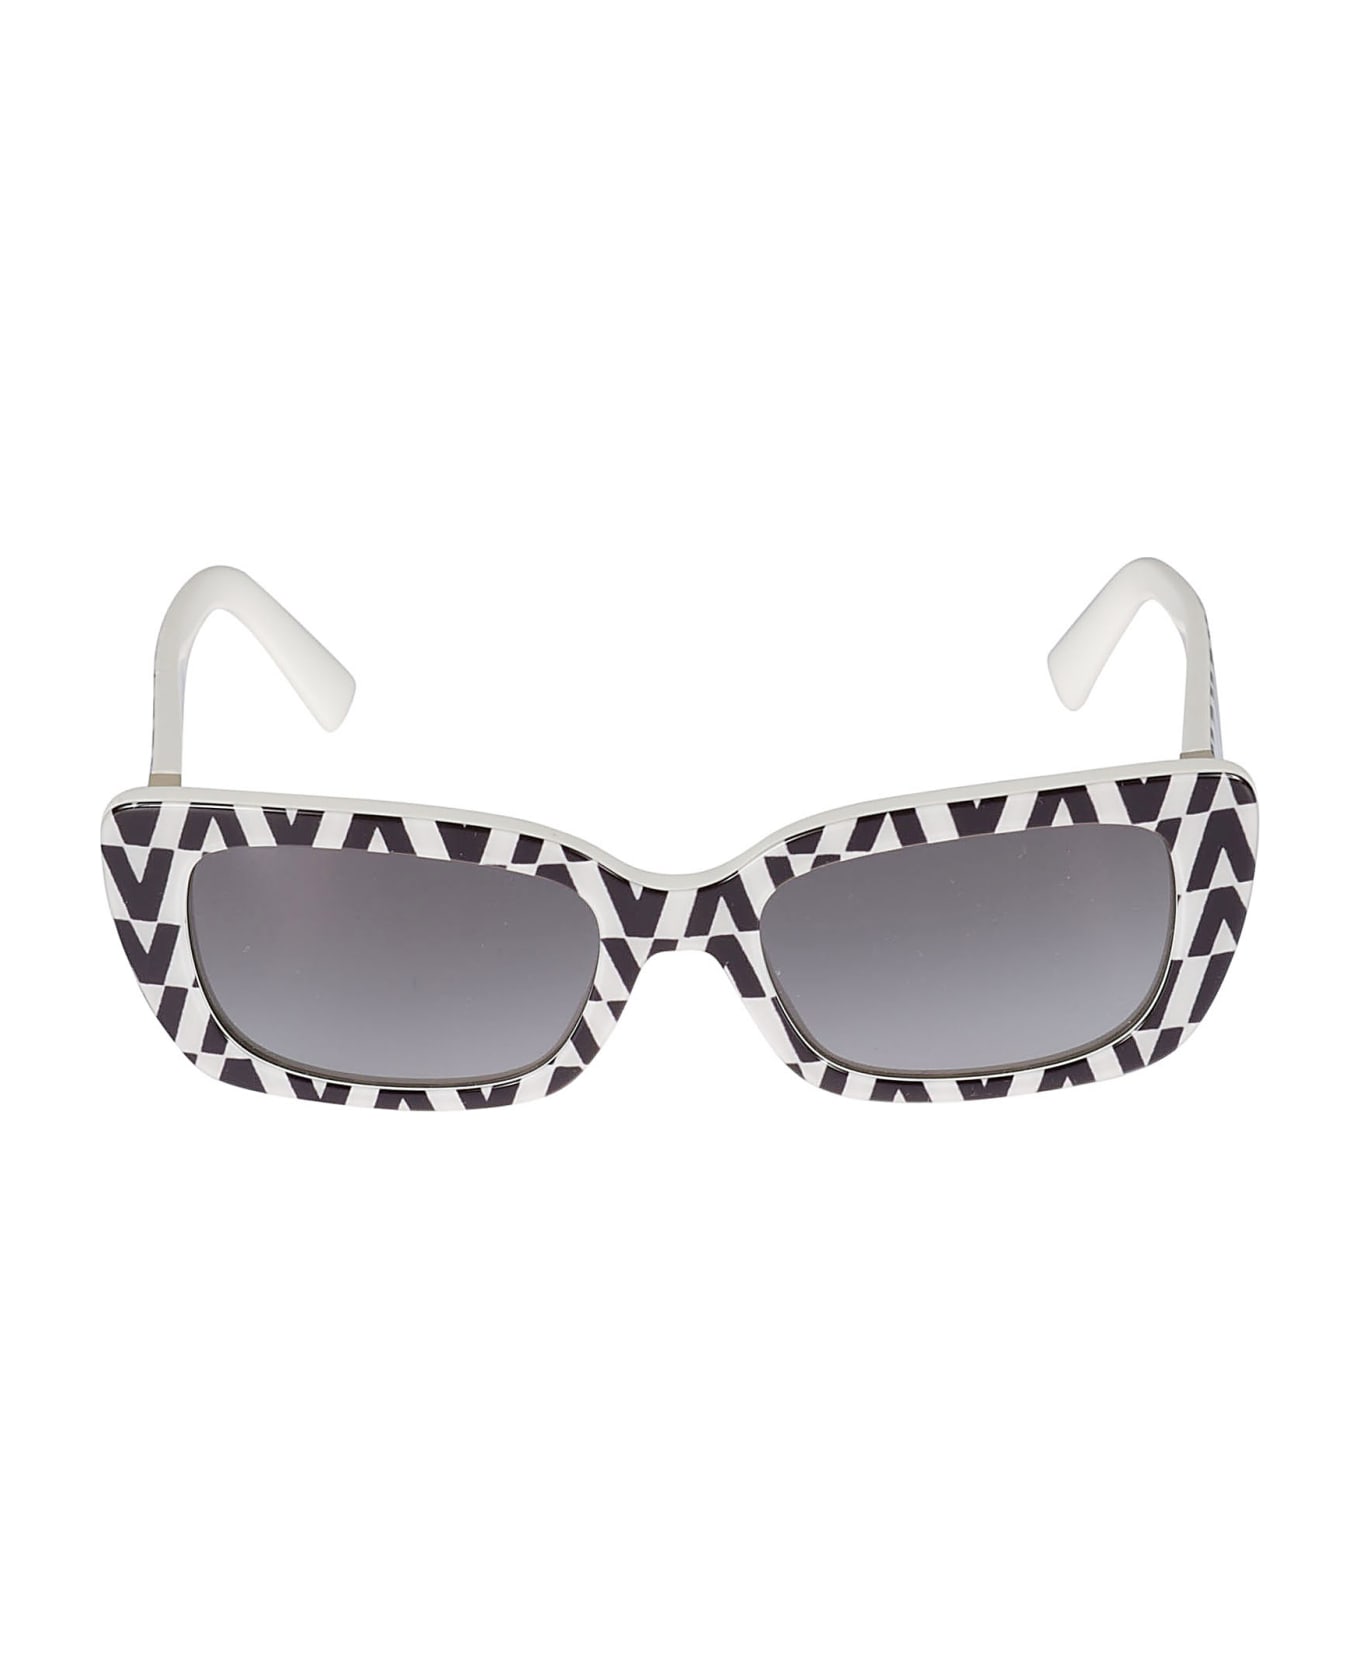 Valentino Eyewear Sole518511 DiorByDior Sunglasses - 518511